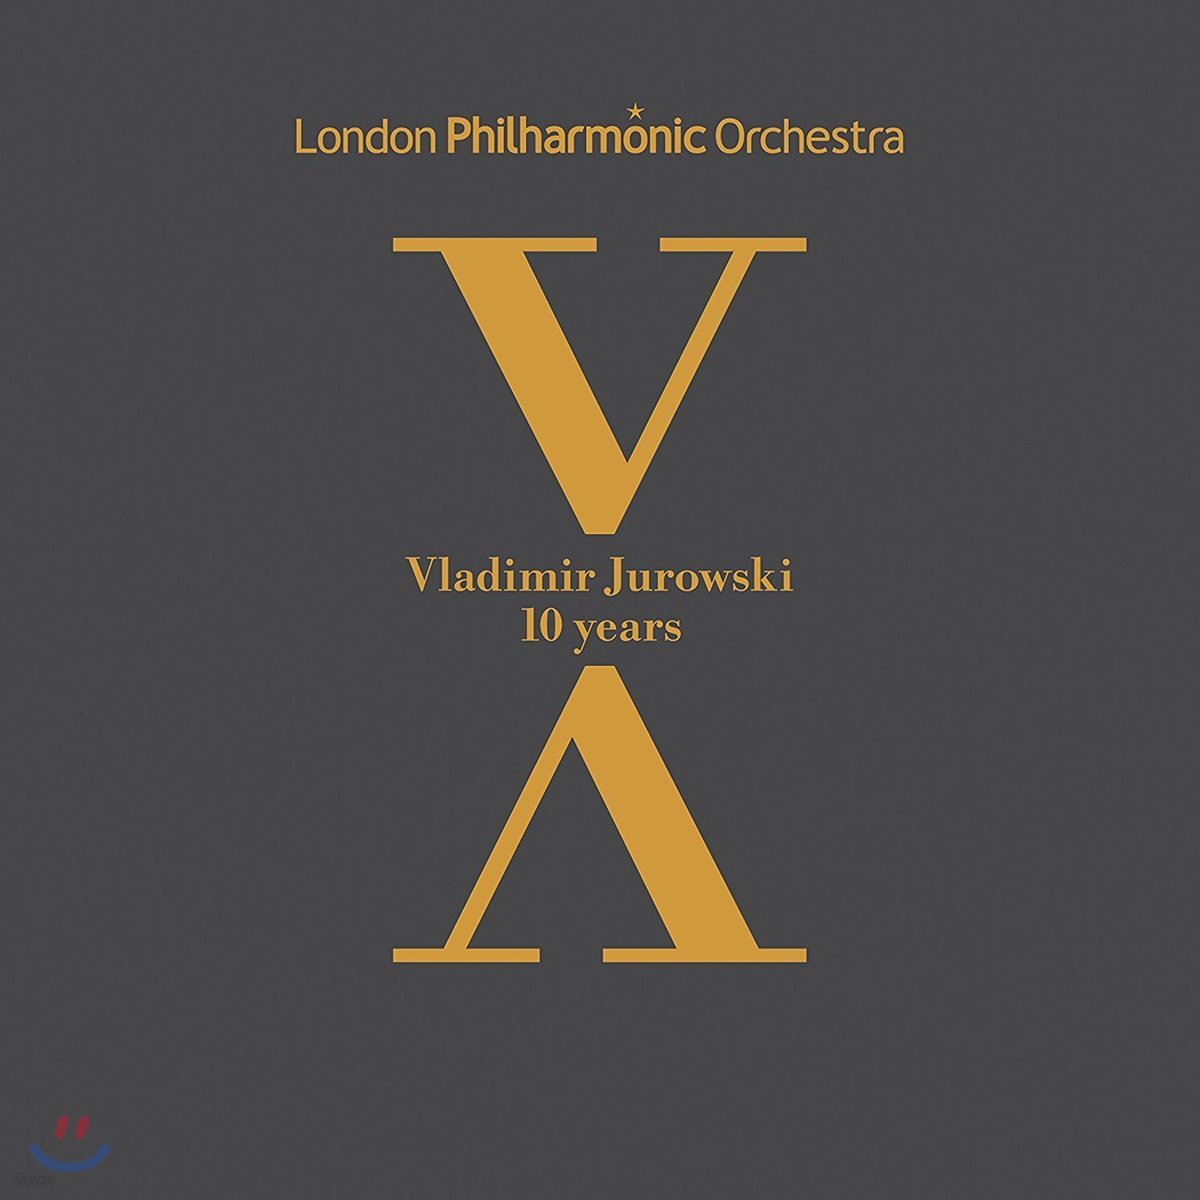 블라디미르 유로프스키와 런던 필의 10년을 담은 음반 (Vladimir Jurowski &amp; London Philharmonic Orchestra - 10 Years)